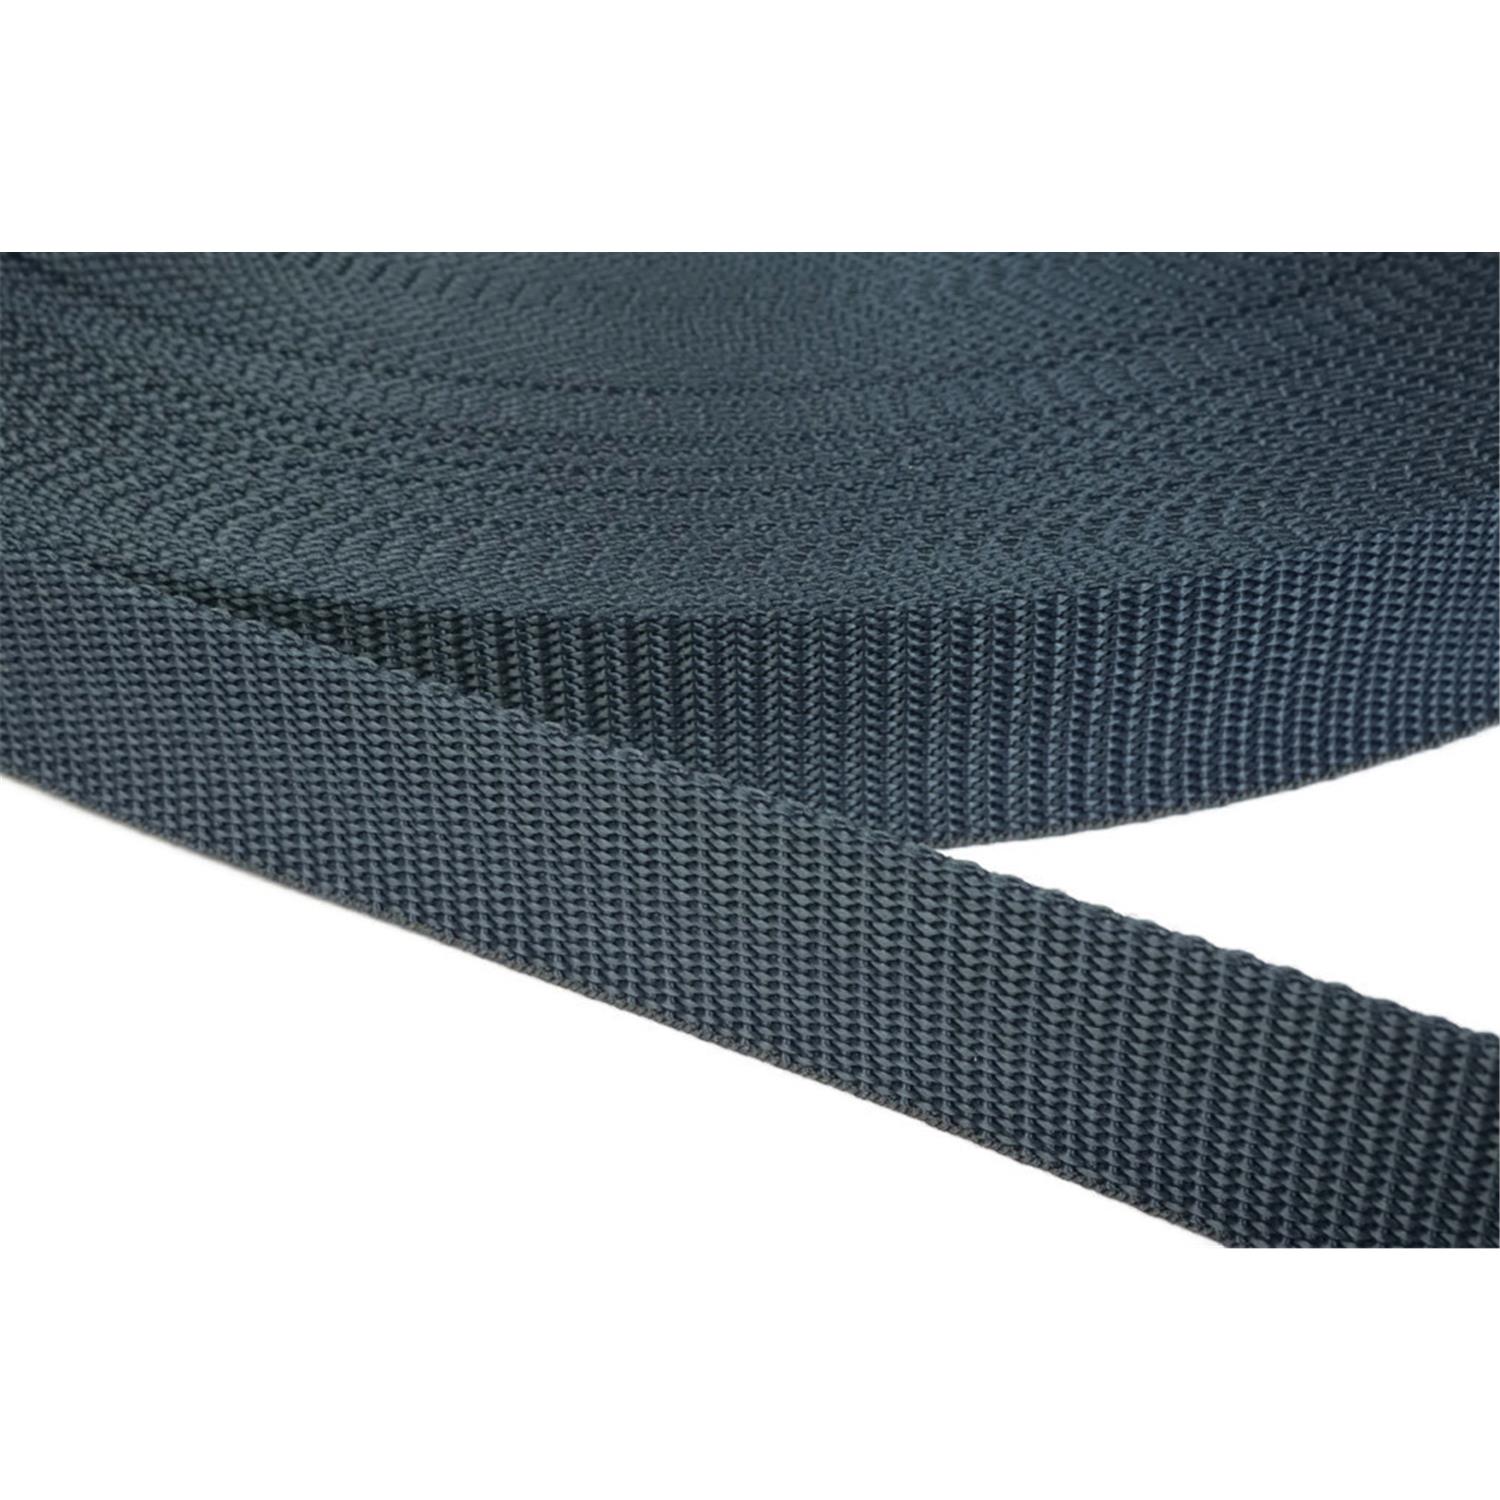 Gurtband 10mm breit aus Polypropylen in 41 Farben 40 - dunkelgrau/blau 50 Meter